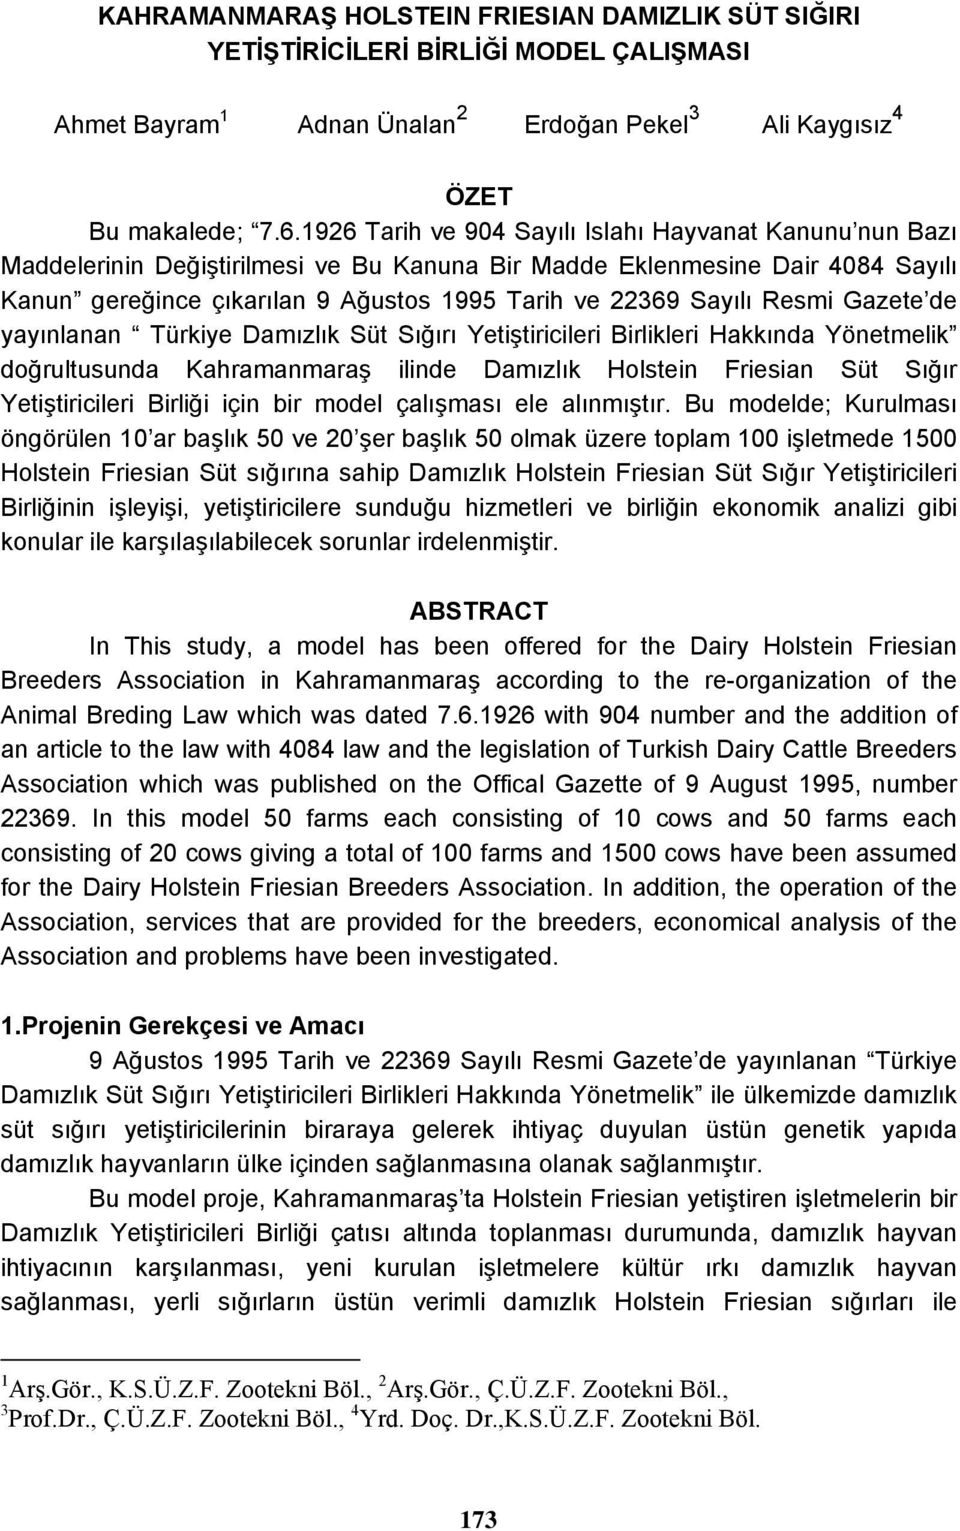 Resmi Gazete de yayınlanan Türkiye Damızlık Süt Sığırı Yetiştiricileri Birlikleri Hakkında Yönetmelik doğrultusunda Kahramanmaraş ilinde Damızlık Holstein Friesian Süt Sığır Yetiştiricileri Birliği